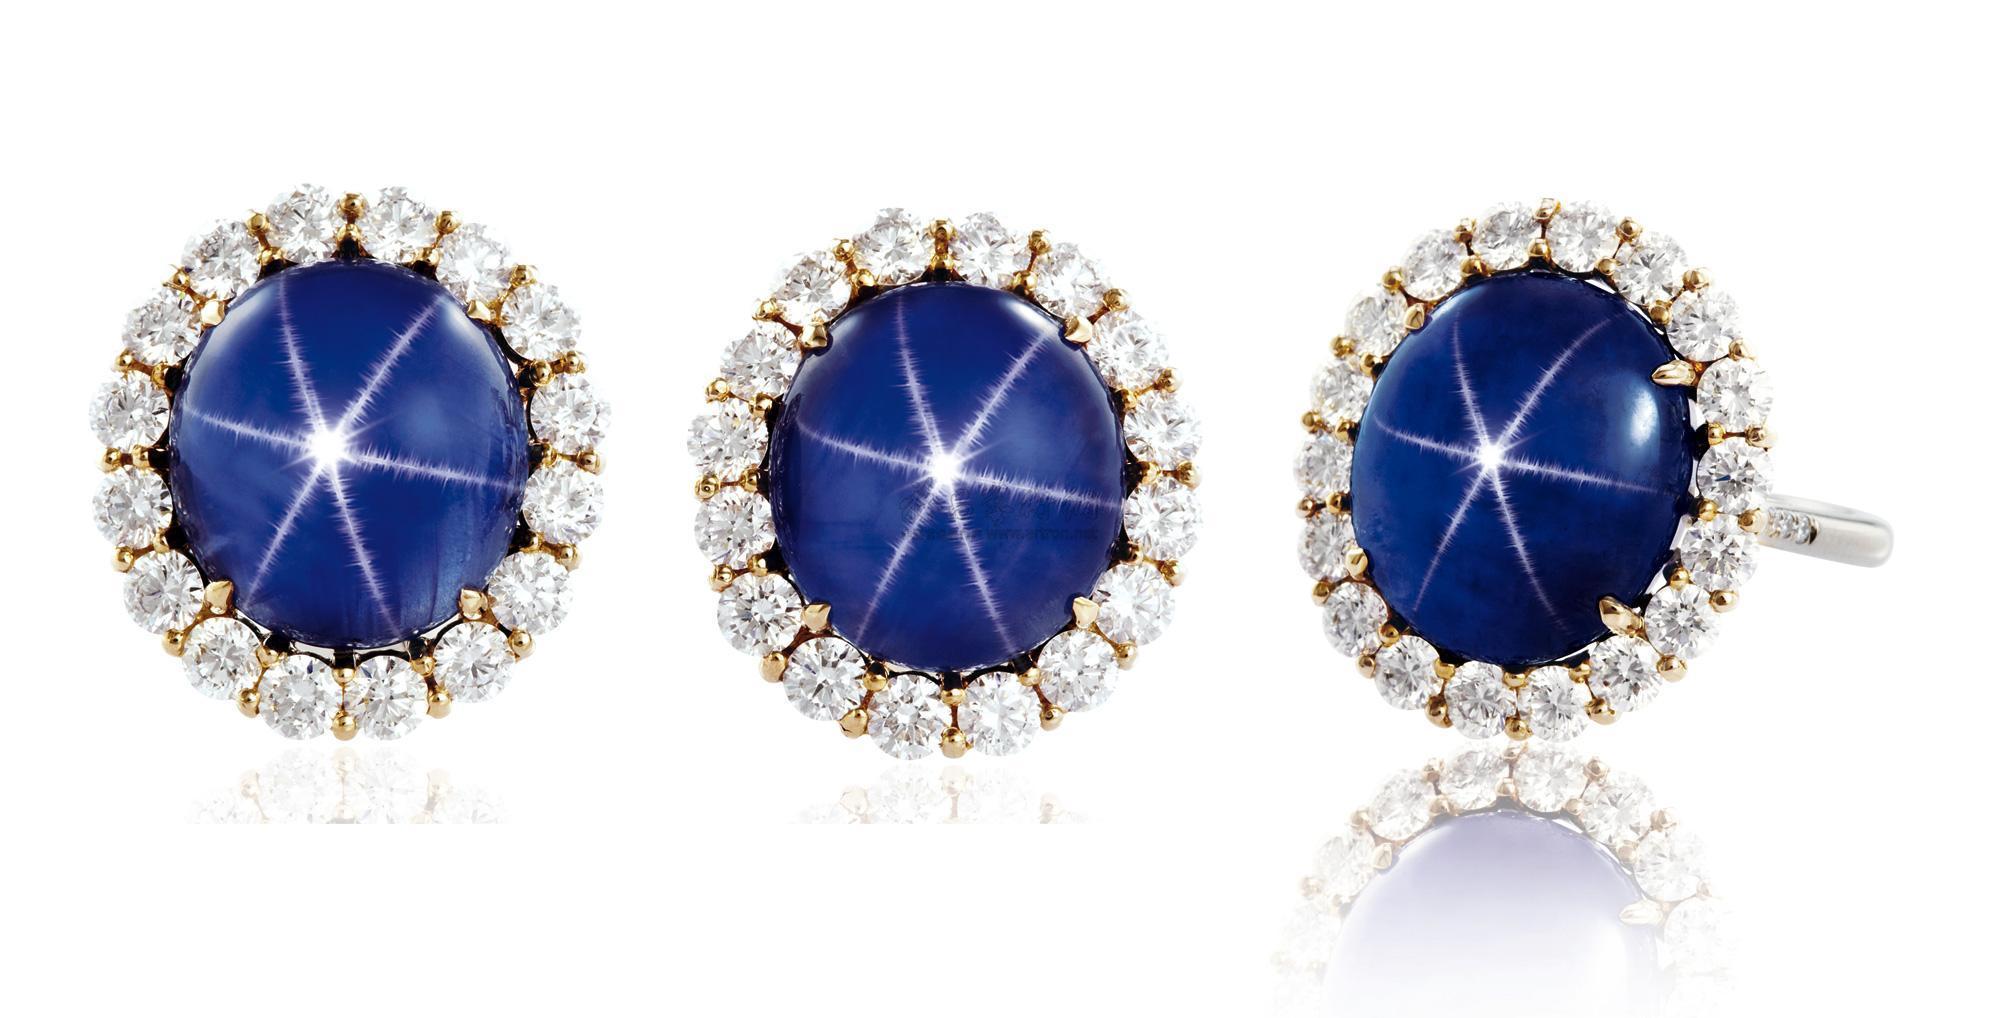 缅甸蓝宝石价格一般是多少钱？缅甸蓝宝石为何闻名于世界？